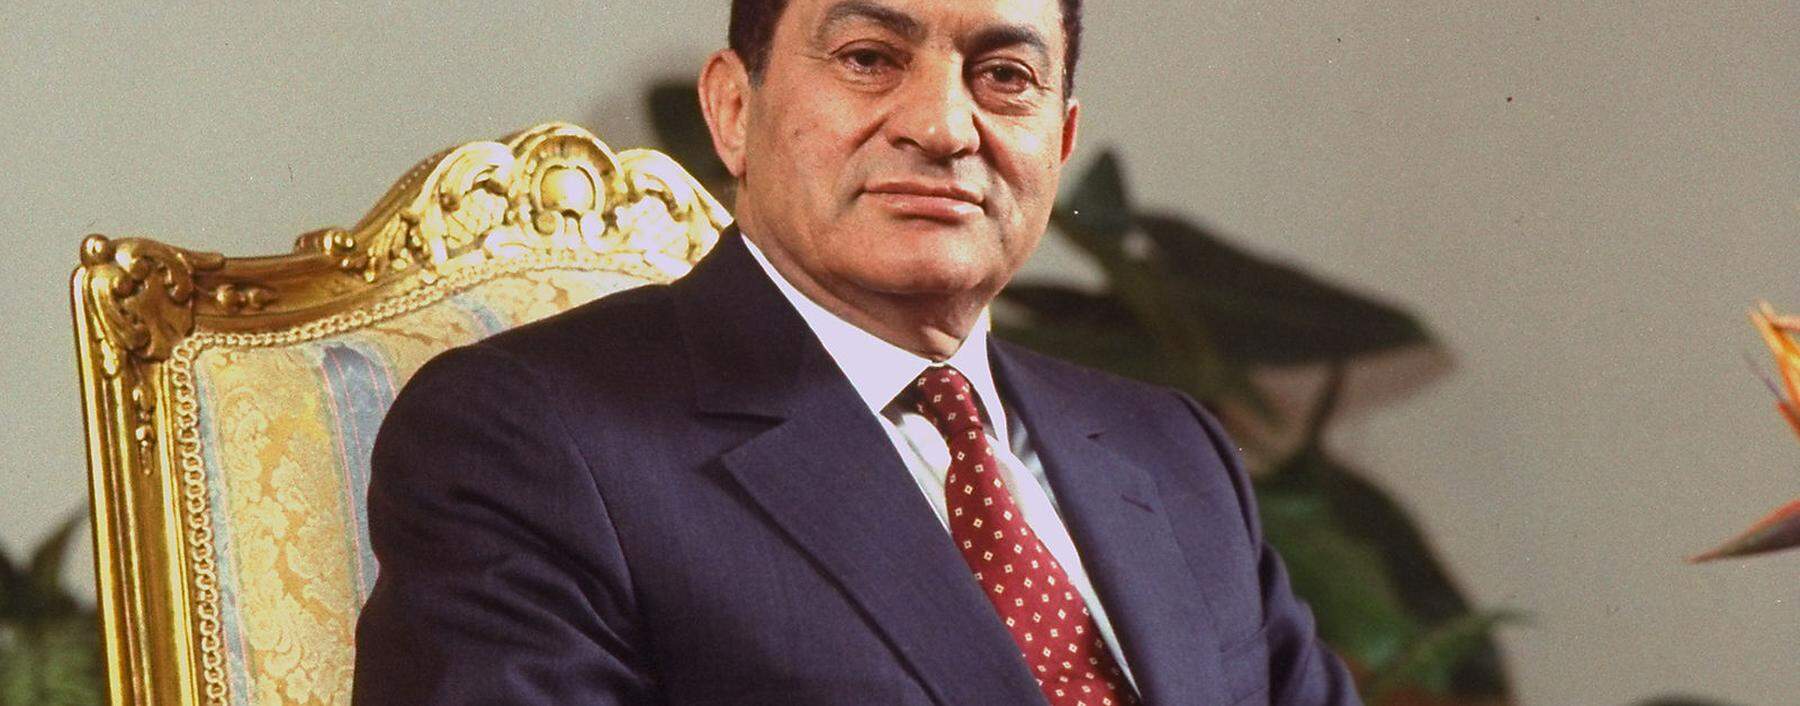 Der Autokrat auf seinem Thron. Hosni Mubarak herrschte von 1981 bis 2011. Nun ist er verstorben. [ Getty Images ]